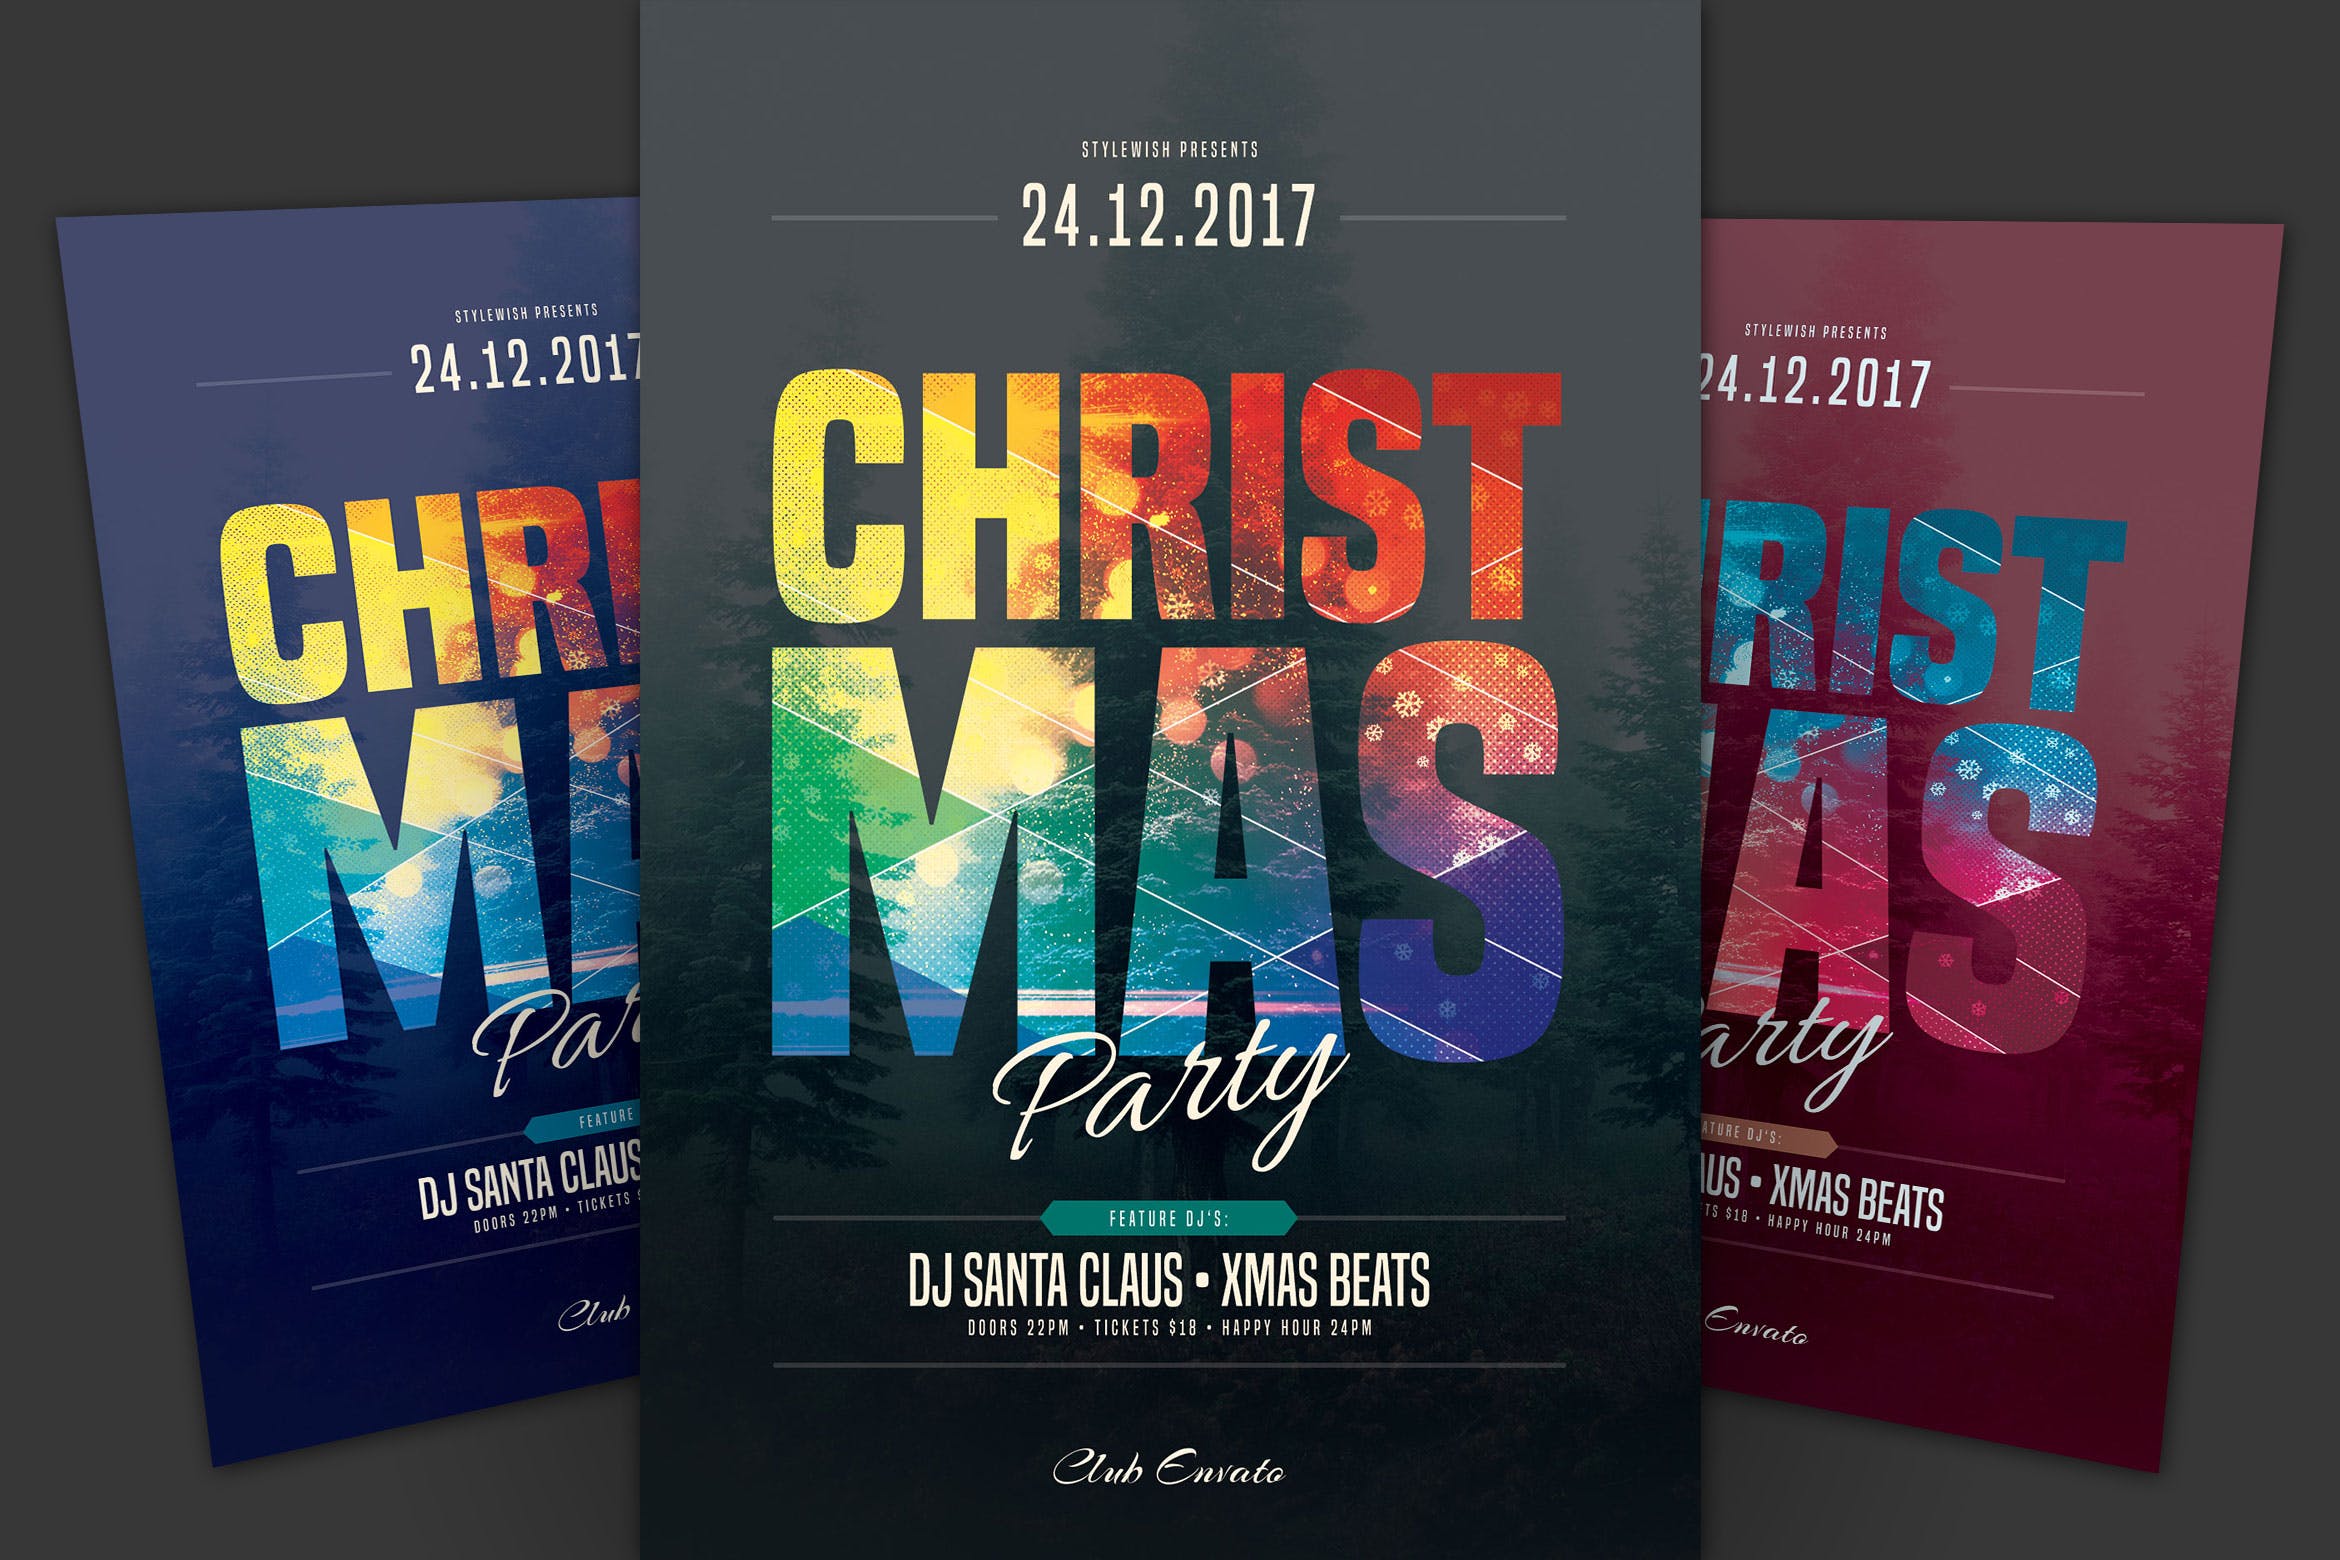 圣诞节音乐狂欢派对海报传单设计模板 Christmas Party Flyer插图